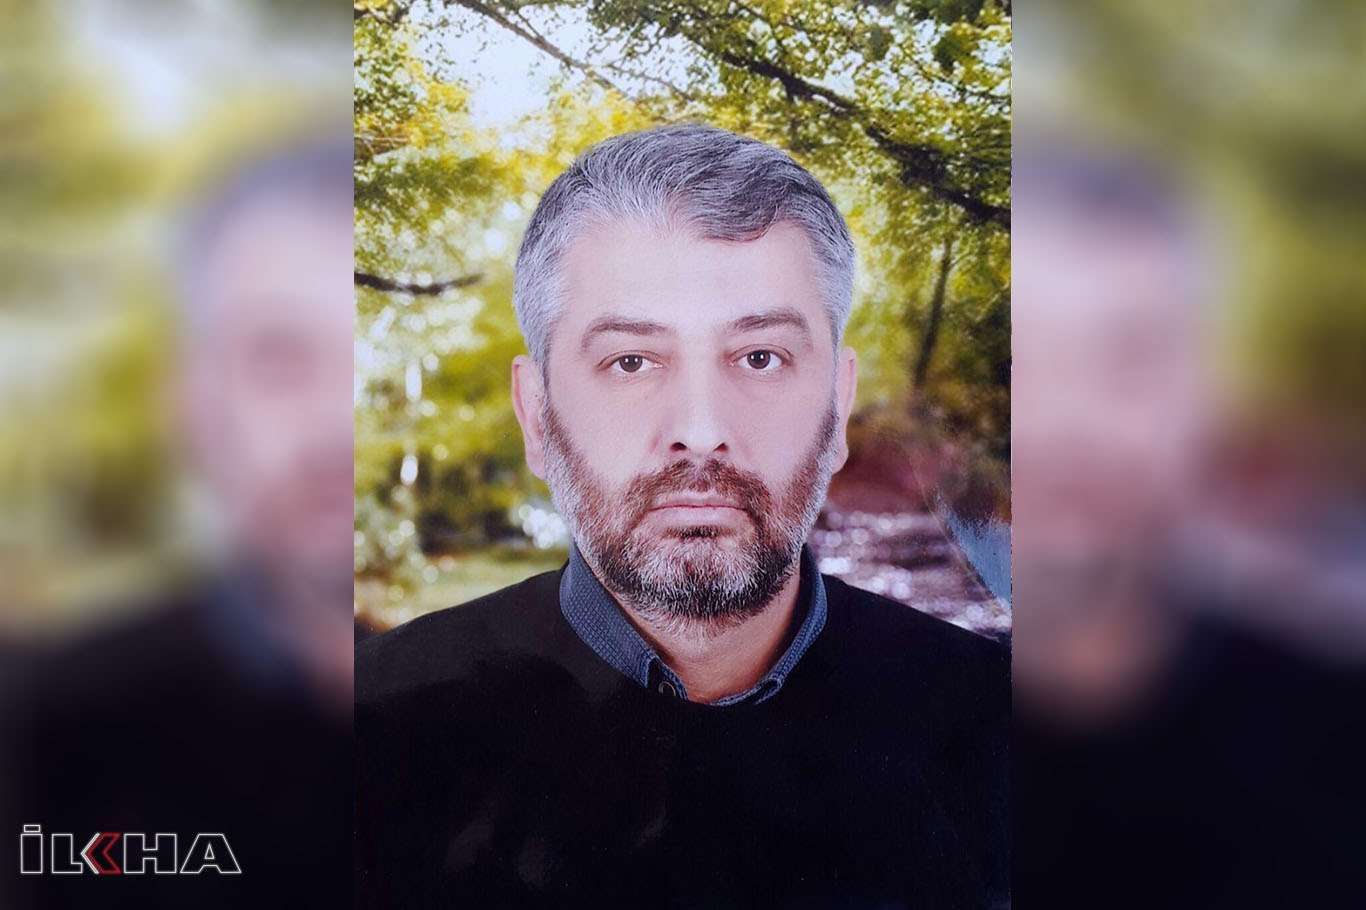 Fesih Güler’s son: My father left us his Islamic cause as a legacy